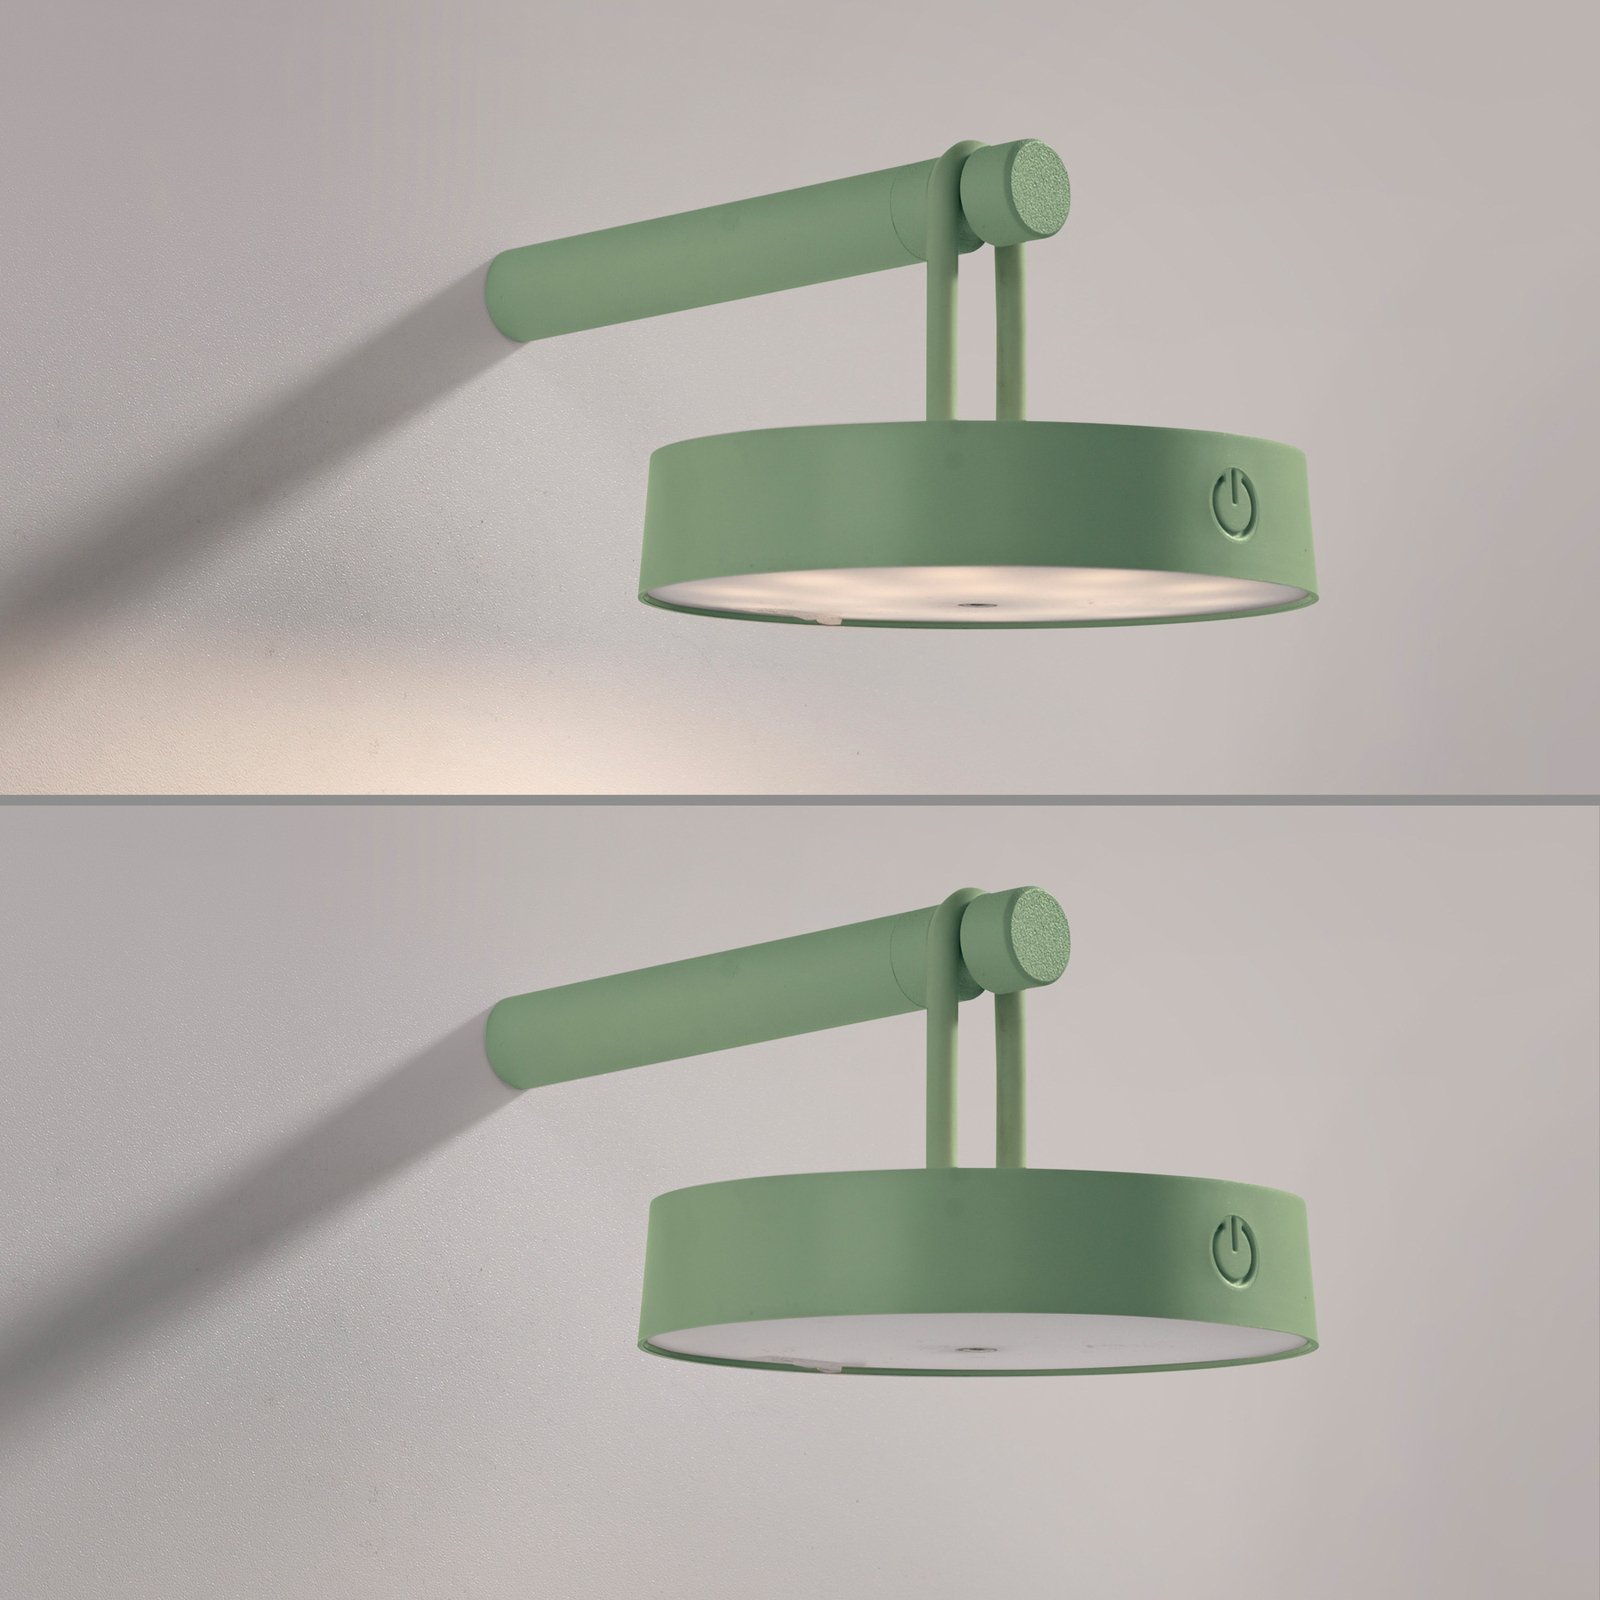 JUST LIGHT. LED įkraunamas sieninis šviestuvas "Arma", žalias, plastikinis